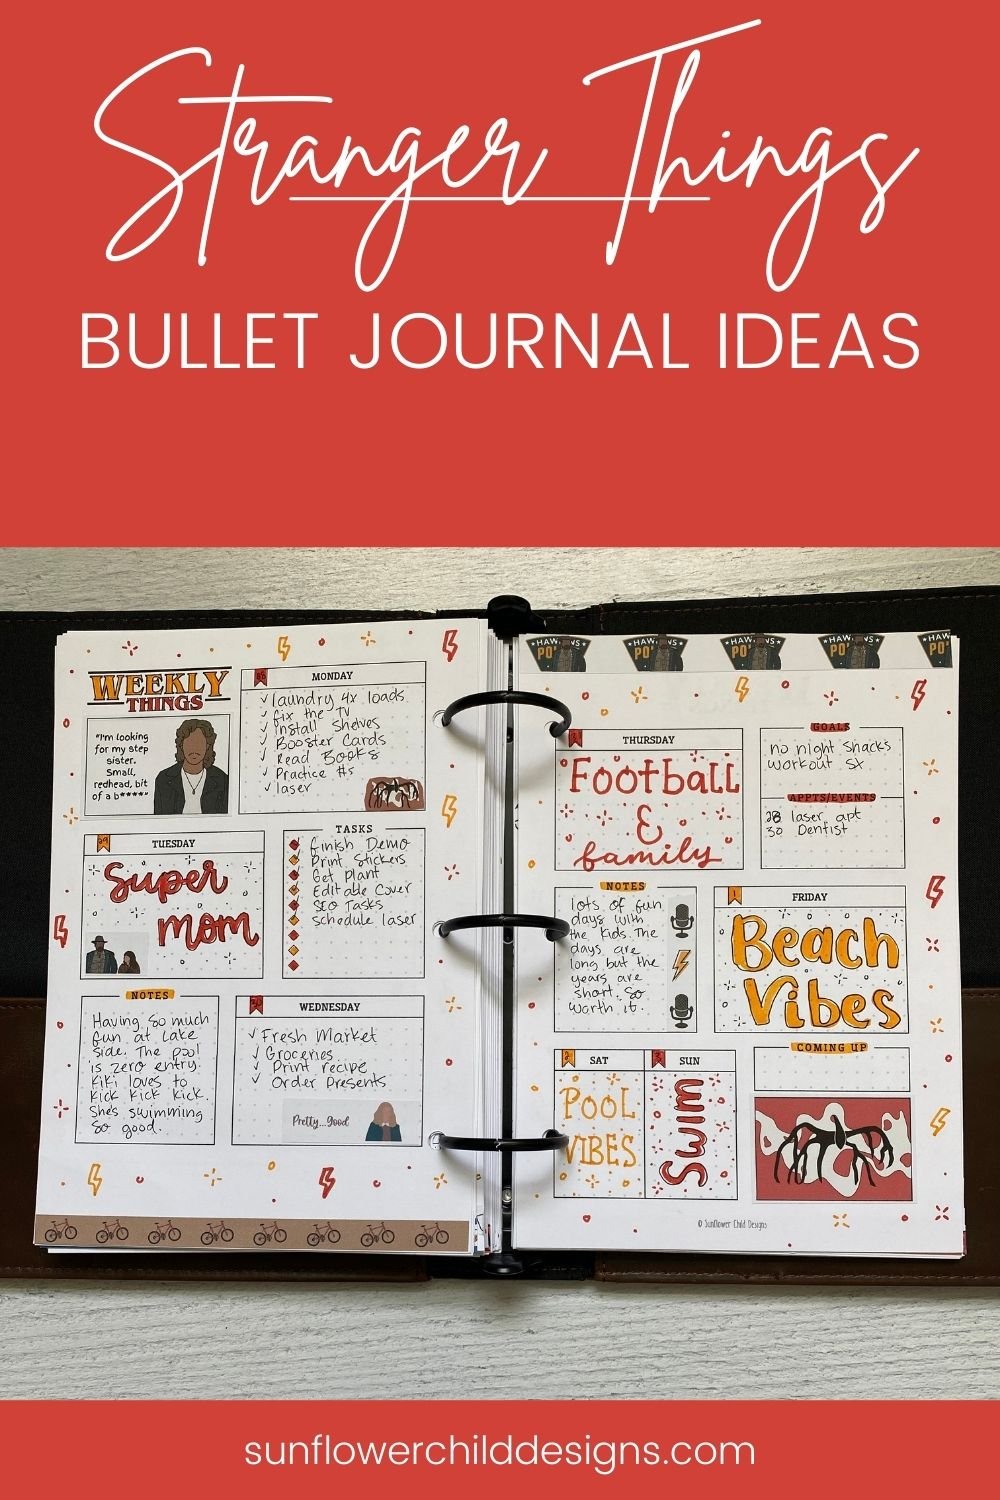 stranger-things-bullet-journal-ideas-8.jpg